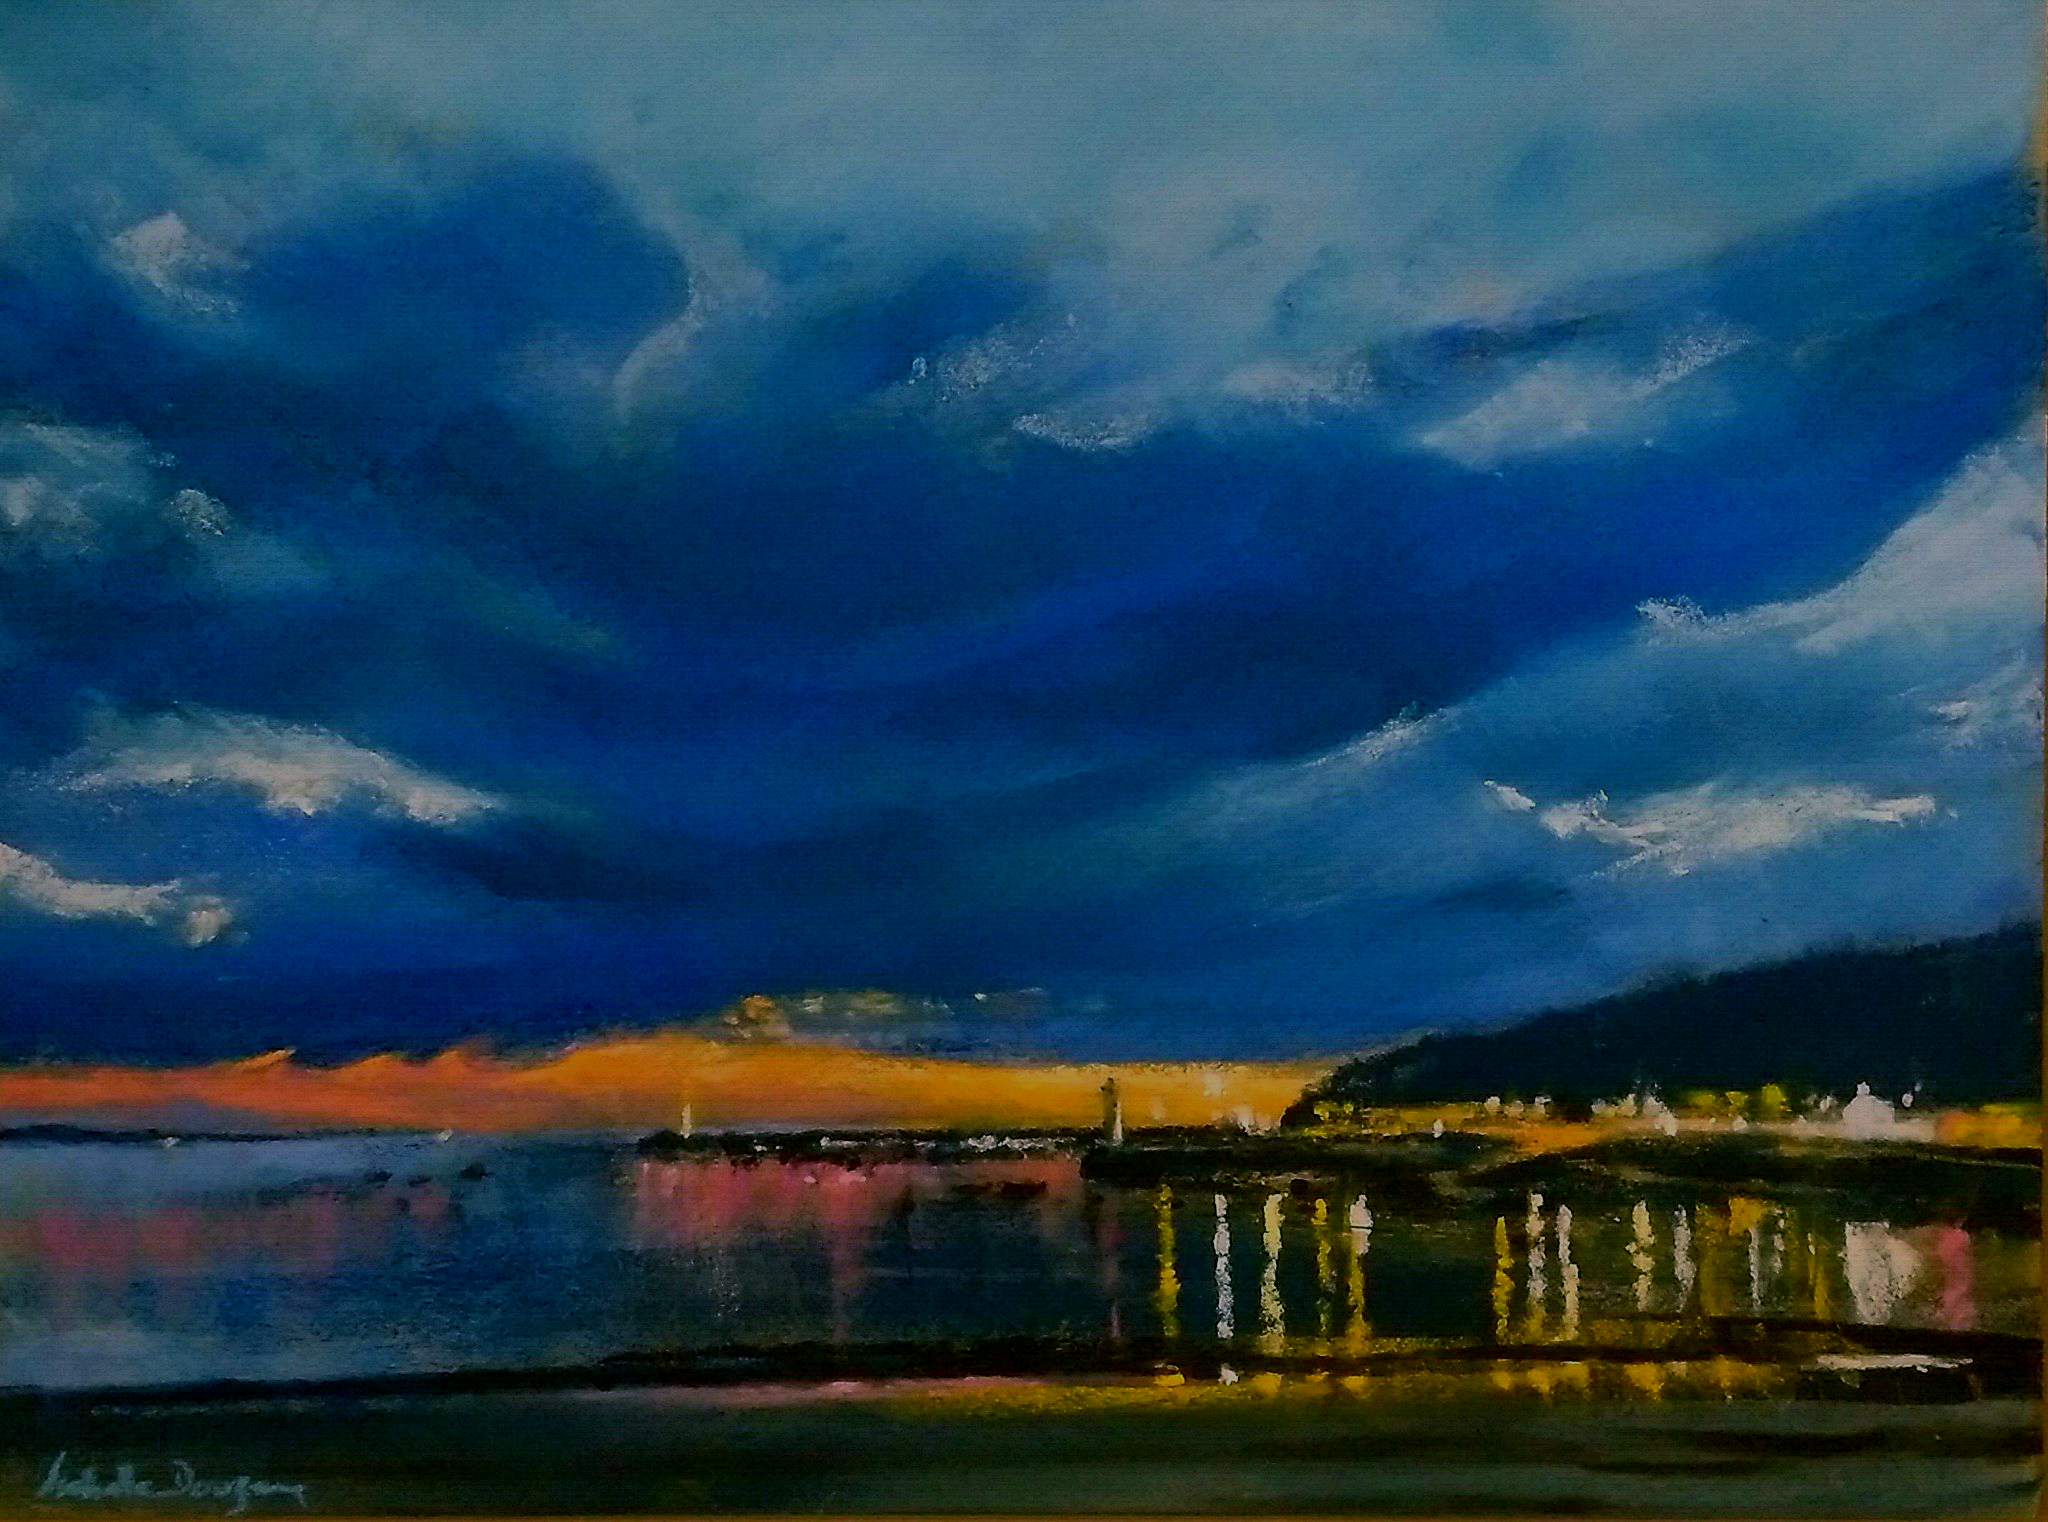 Ambiance du soir Port d'Erquy - Peinture au pastel sec par l'artiste peintre Isabelle Douzamy - 40x50 cm - encadré